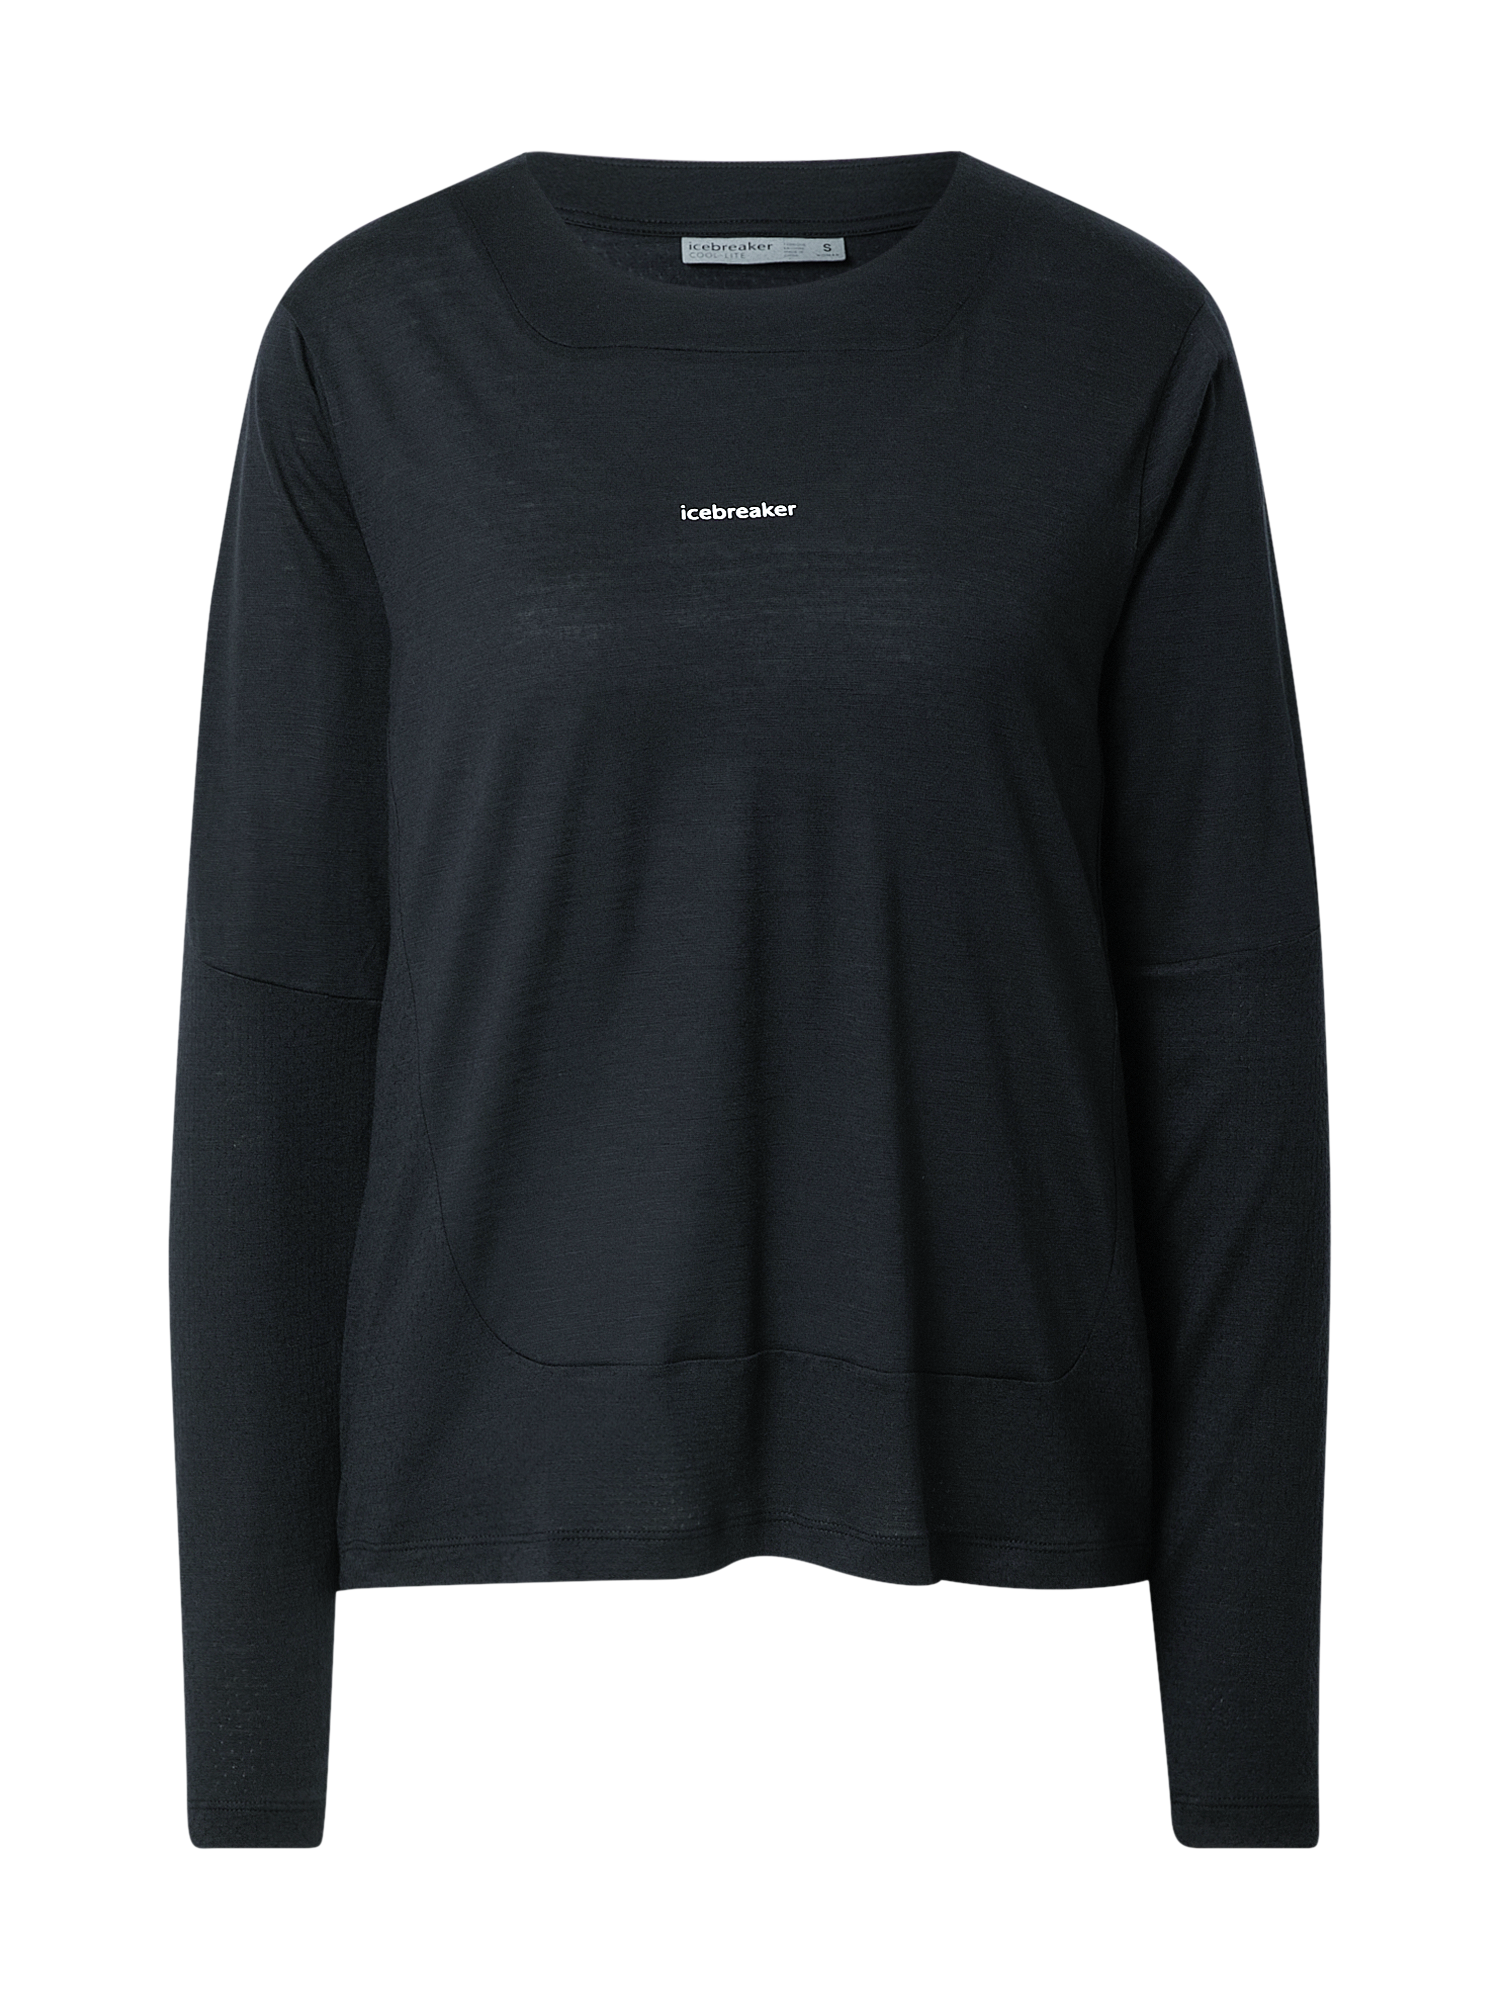 Odzież okOIC ICEBREAKER Koszulka funkcyjna Meteroa w kolorze Czarnym 